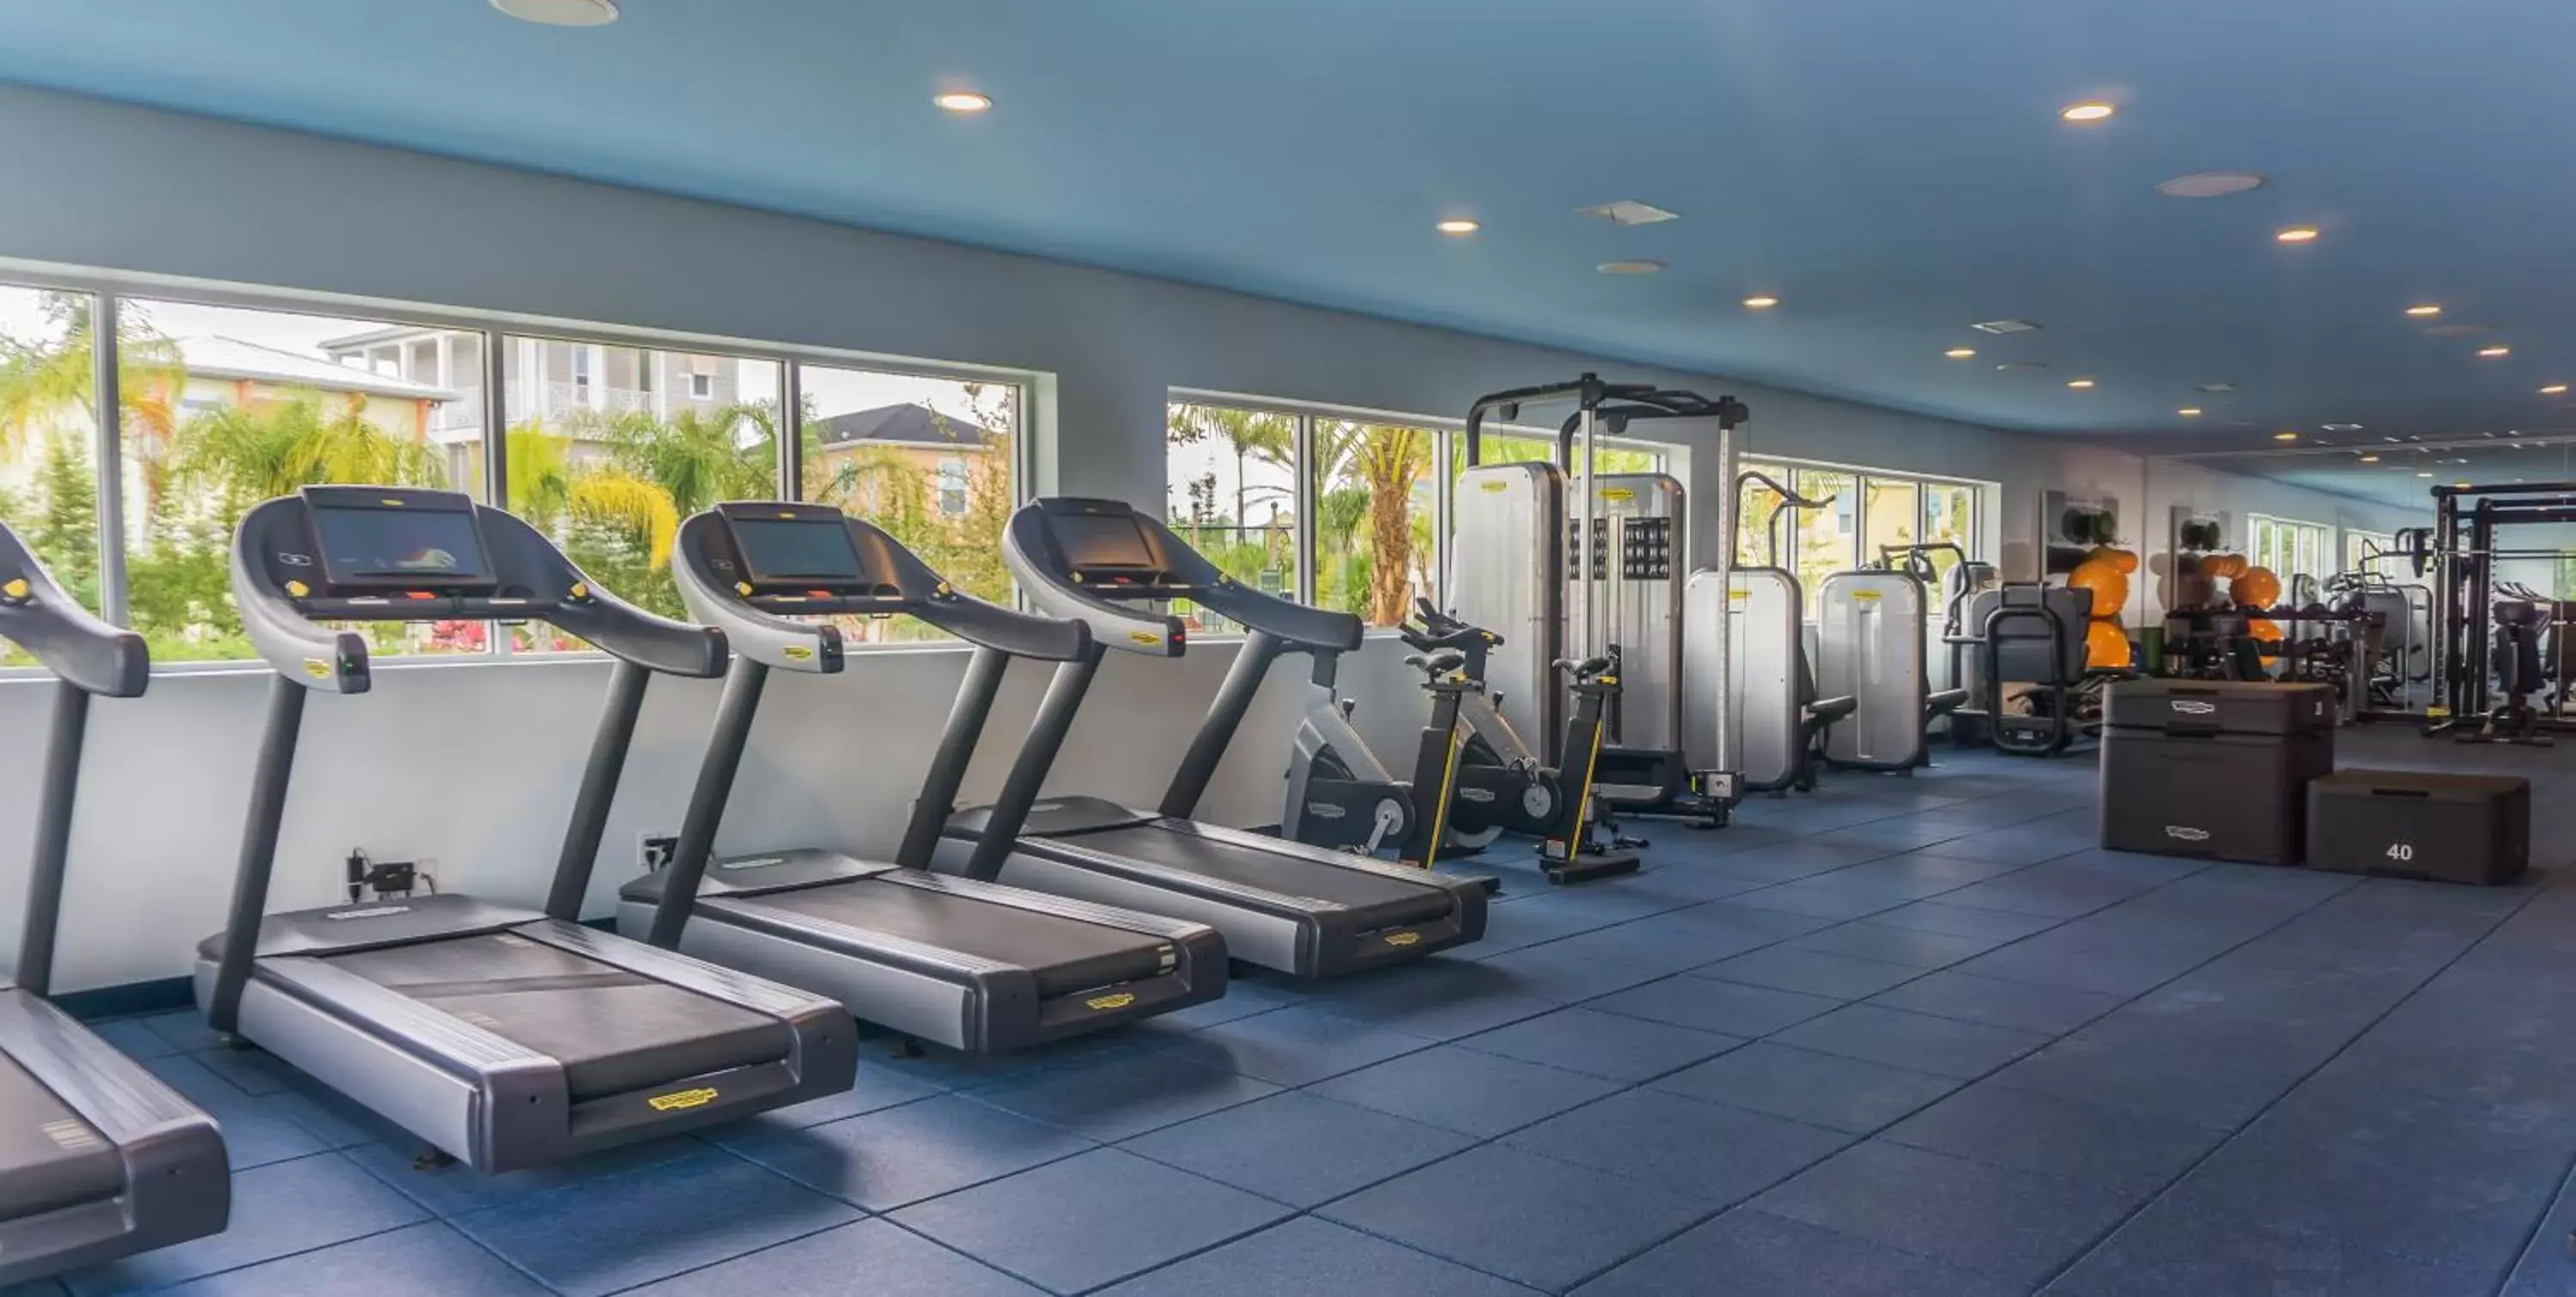 Fitness centre/facilities, Fitness Center/Facilities in Margaritaville Resort Orlando